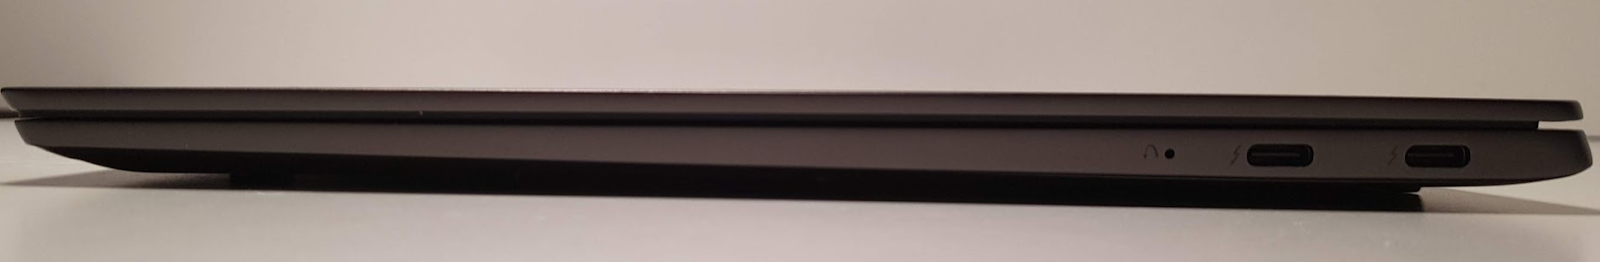 Обзор ноутбука Lenovo S730-13 (2018): мощное железо в стильном алюминиевом корпусе - 5